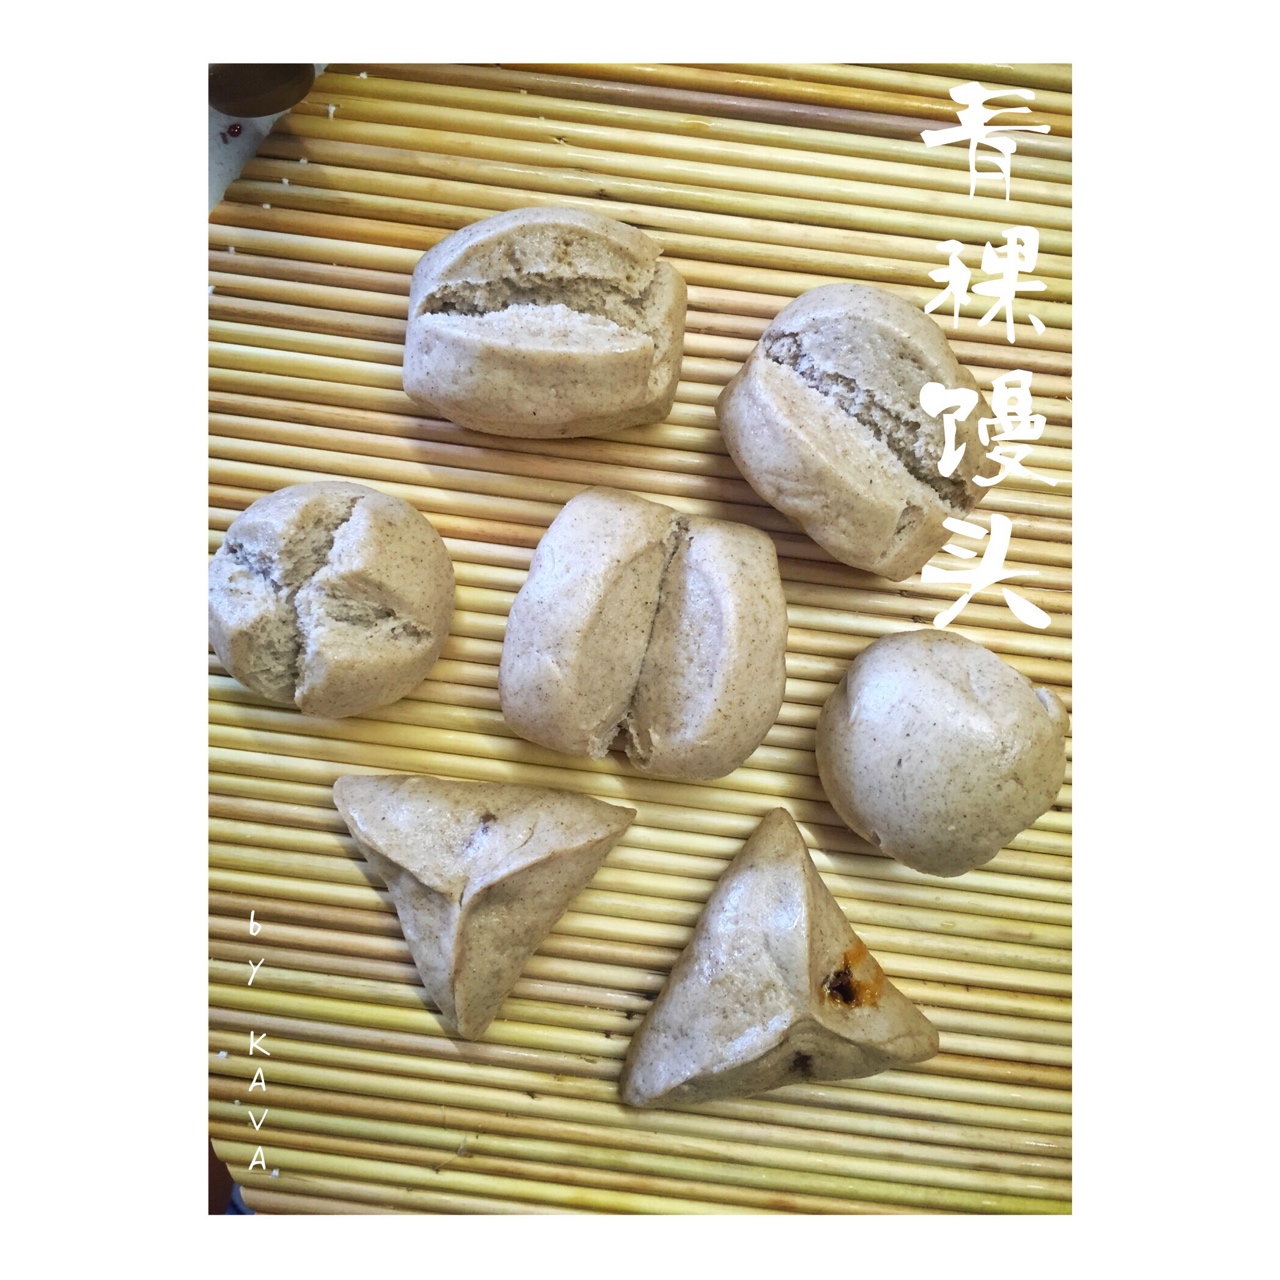 馒头 青稞馒头 kava做的青稞馒头  赞 面粉,青稞粉(生),水,酵母粉,糖